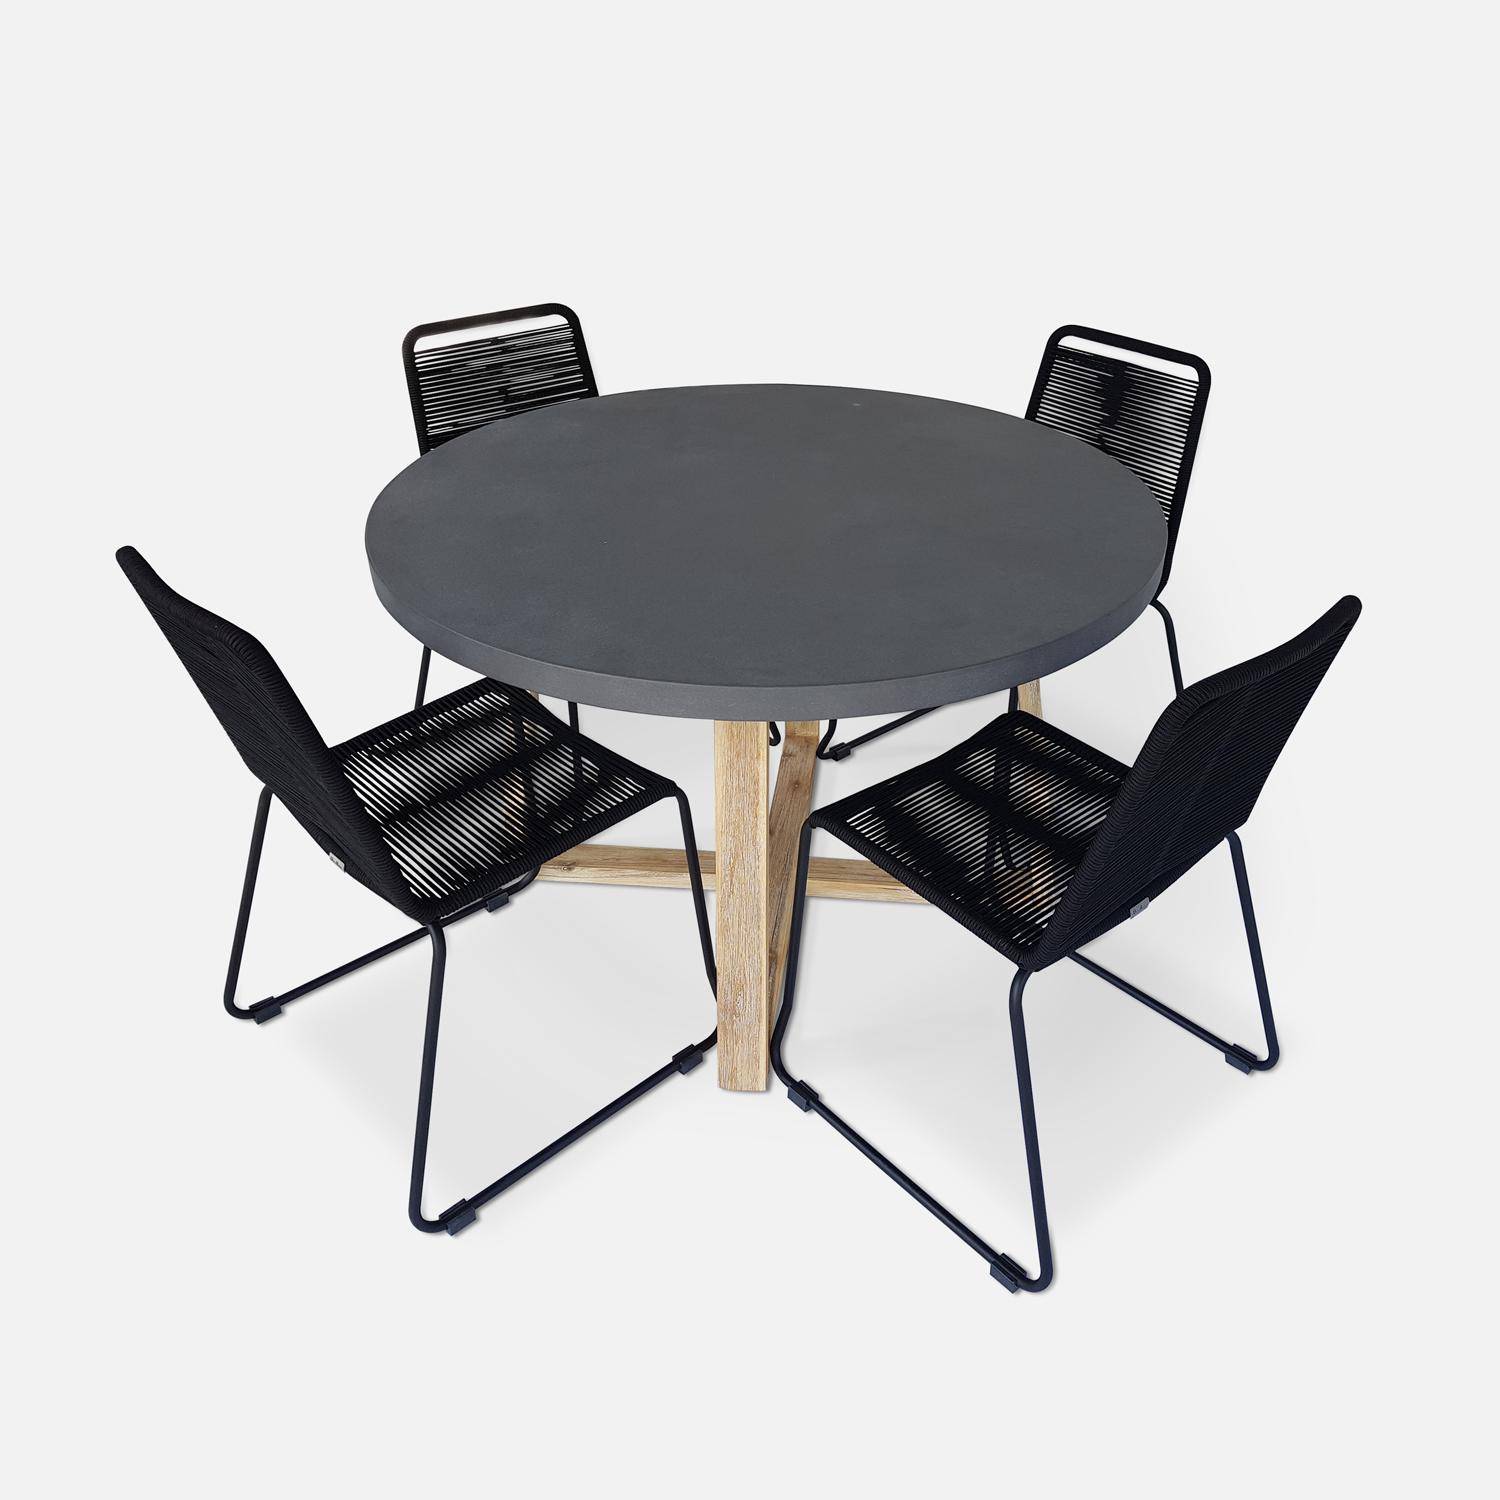 Borneo runder Gartentisch aus Faserzement Ø120cm und Brasilia Gartenstühle aus schwarzem Seil stapelbar Photo1